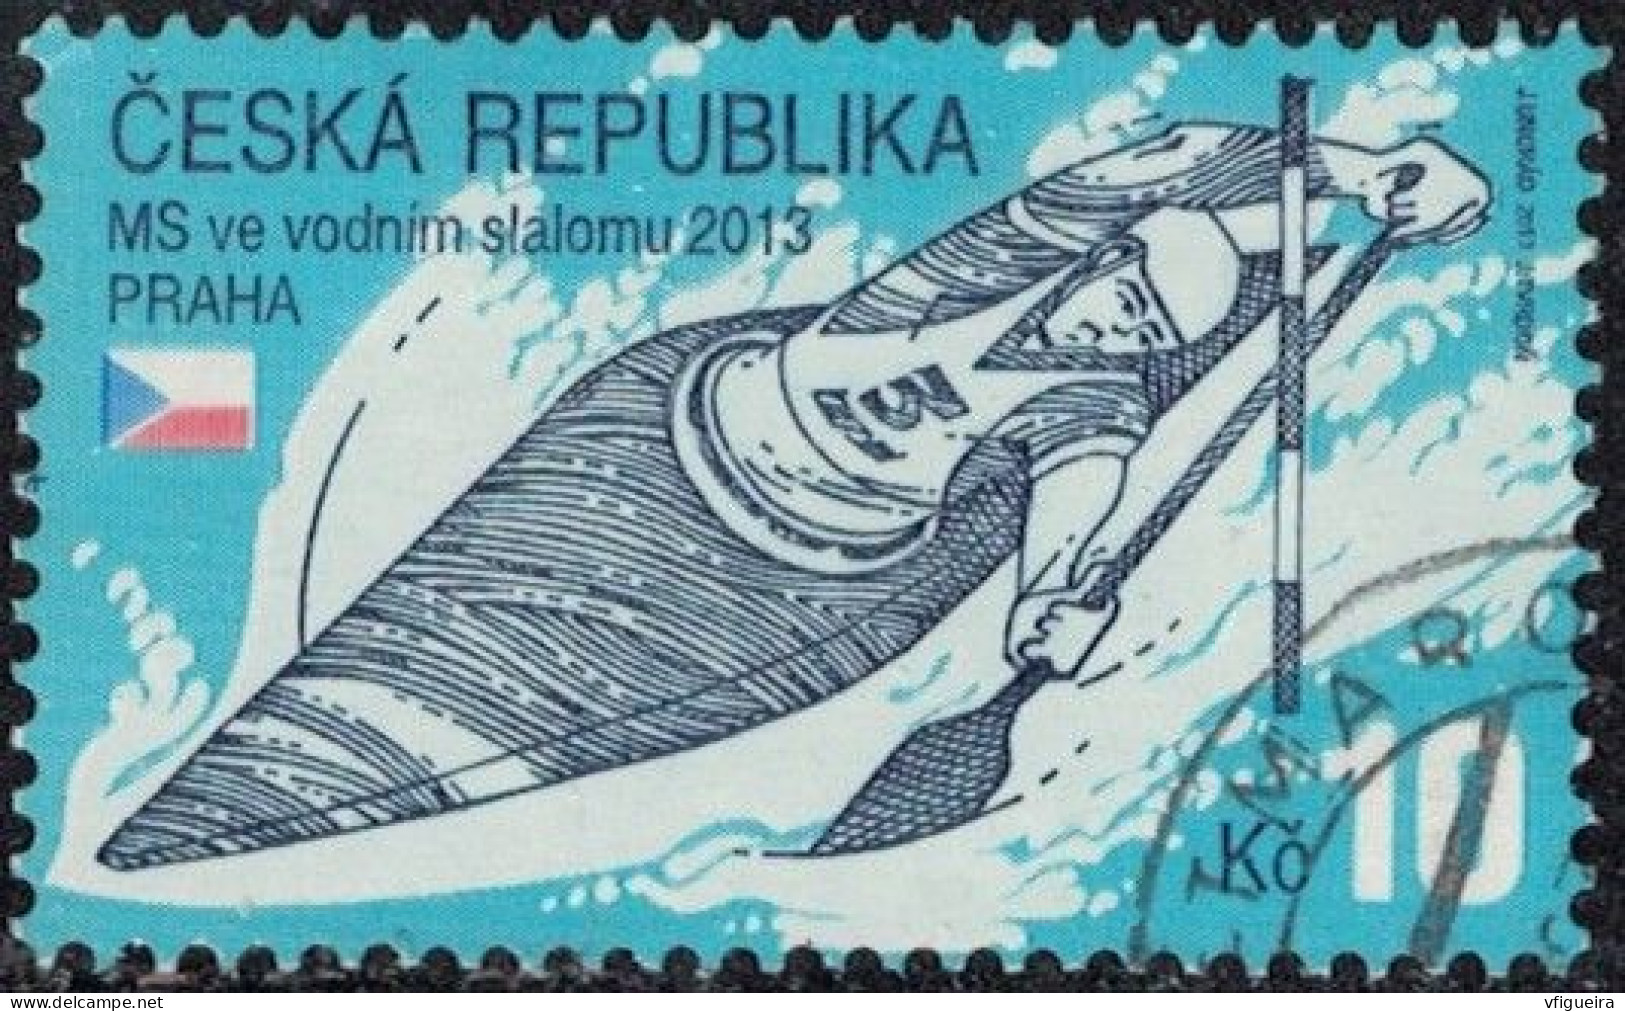 République Tchèque 2013 Oblitéré Used Championnats Du Monde De Slalom De Kayak Y&T CZ 686 SU - Gebruikt